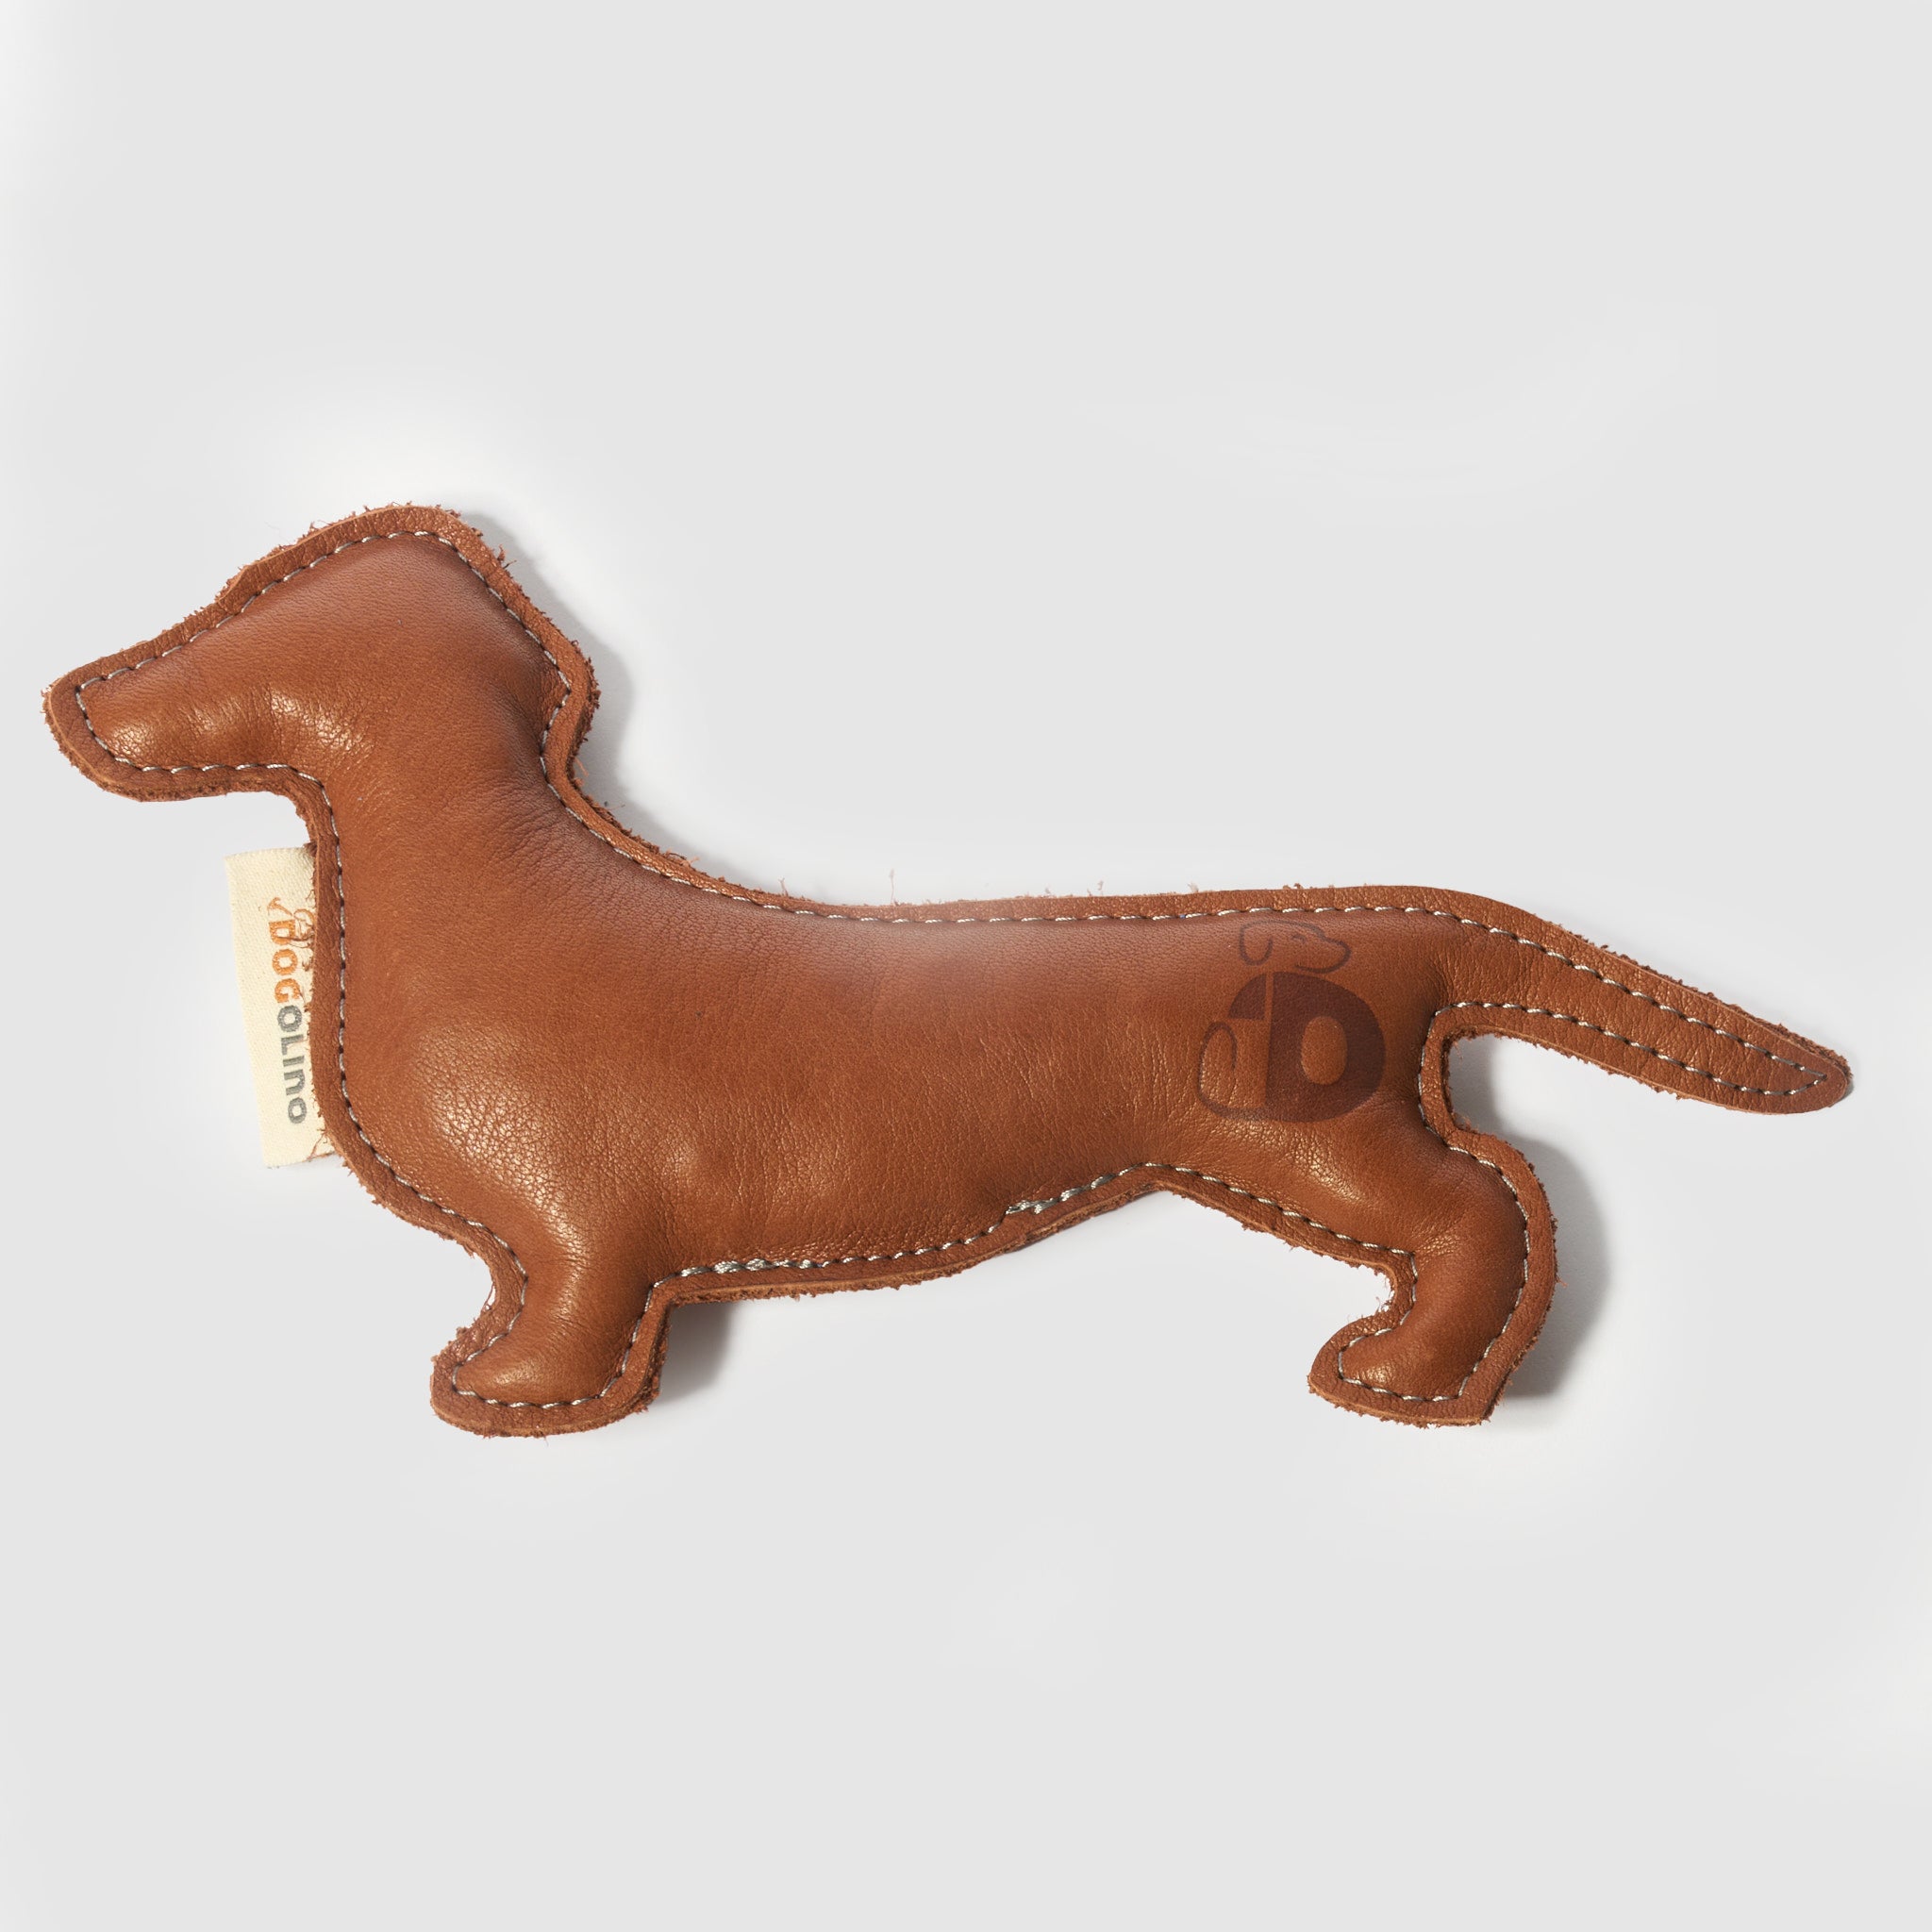 Hundespielzeug Dackel Leder     - von Dogolino kaufen bei leopolds-finest